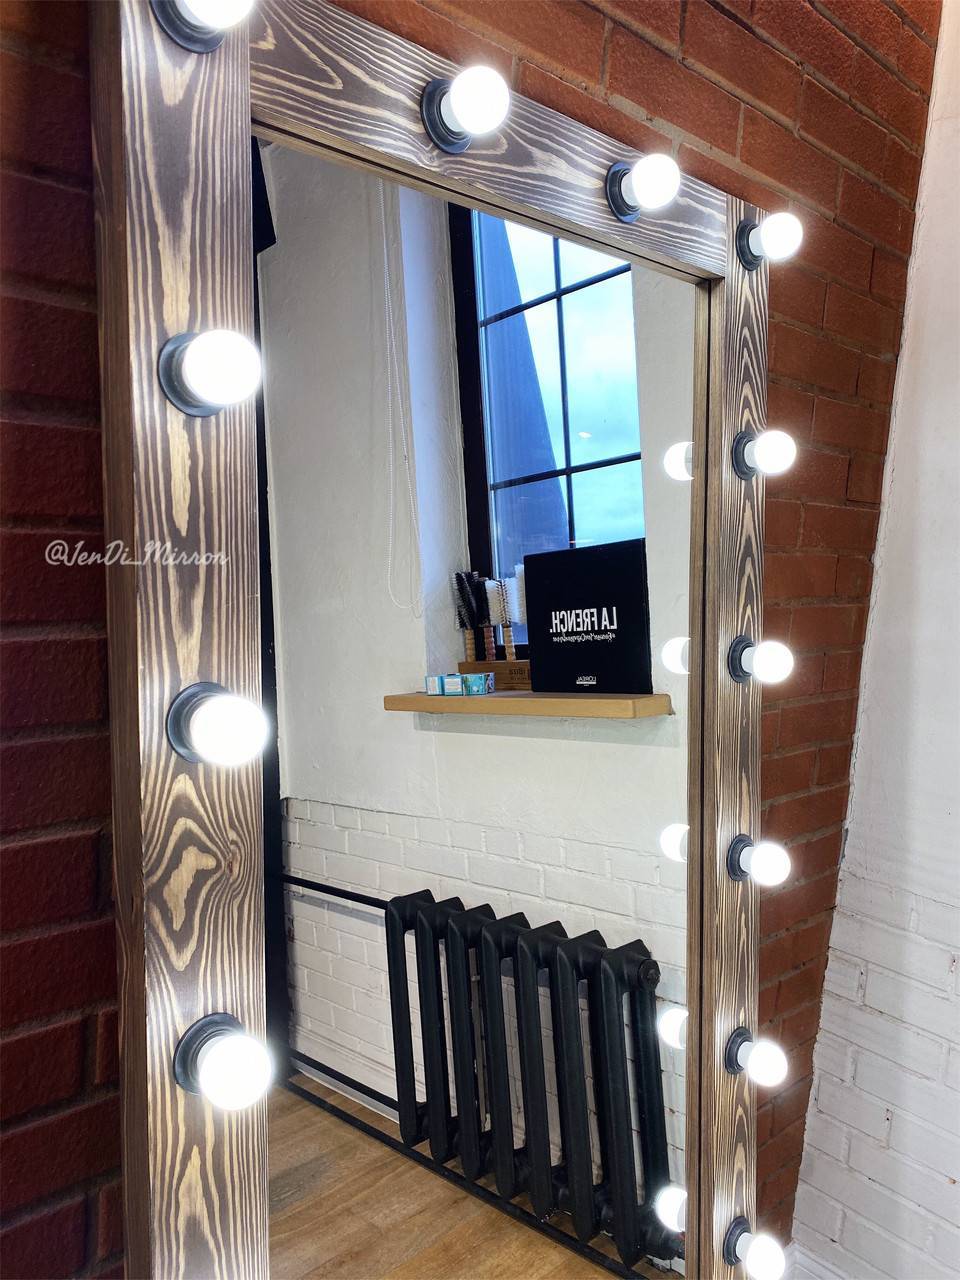 Зеркало с подсветкой своими руками - мастер-класс создания зеркала для визажа